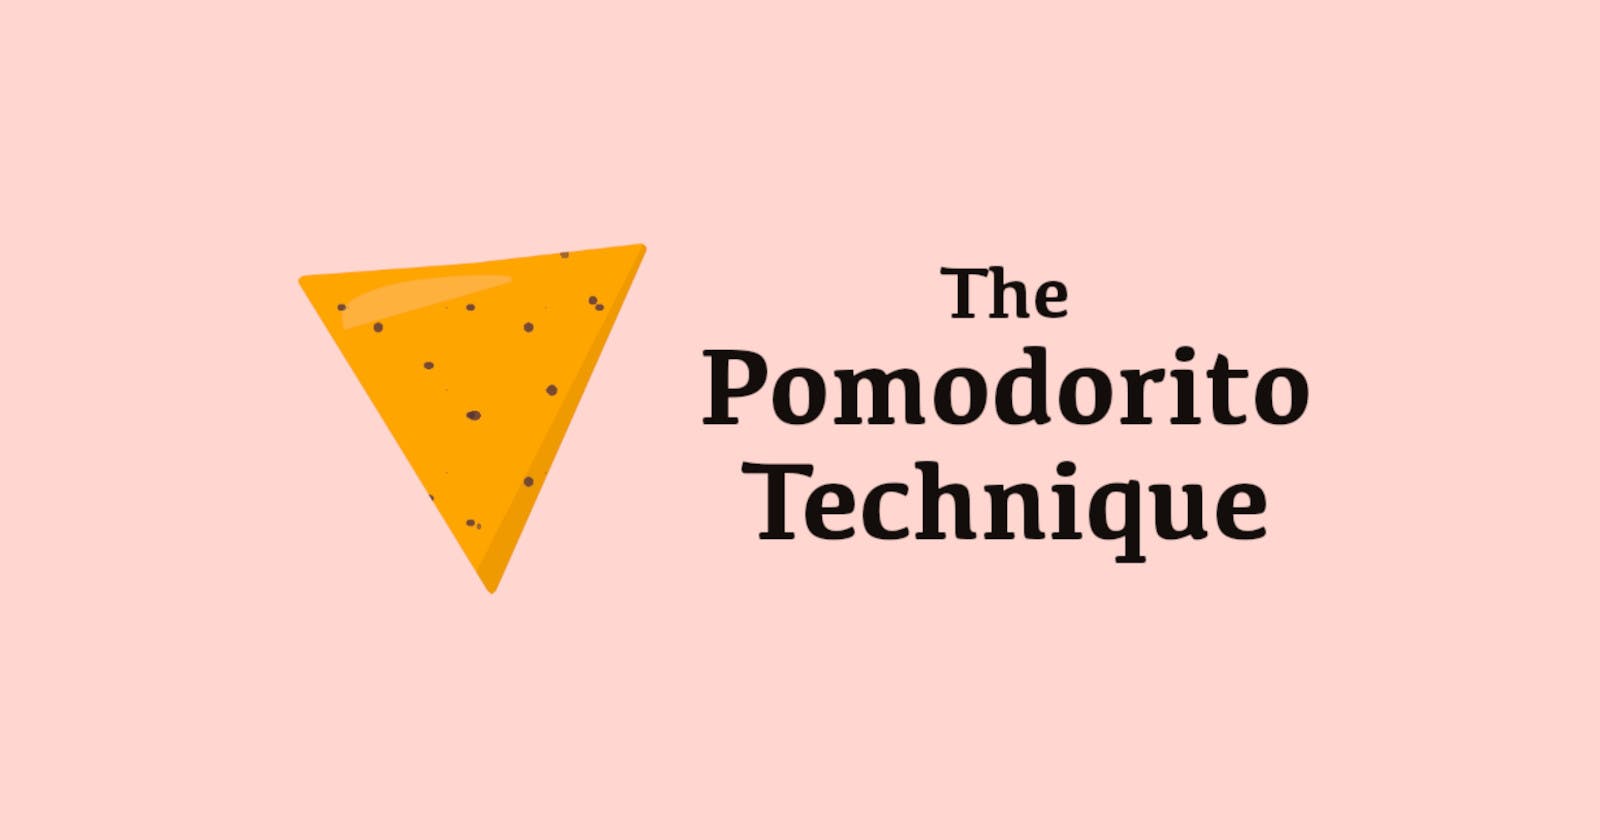 The Pomodorito Technique